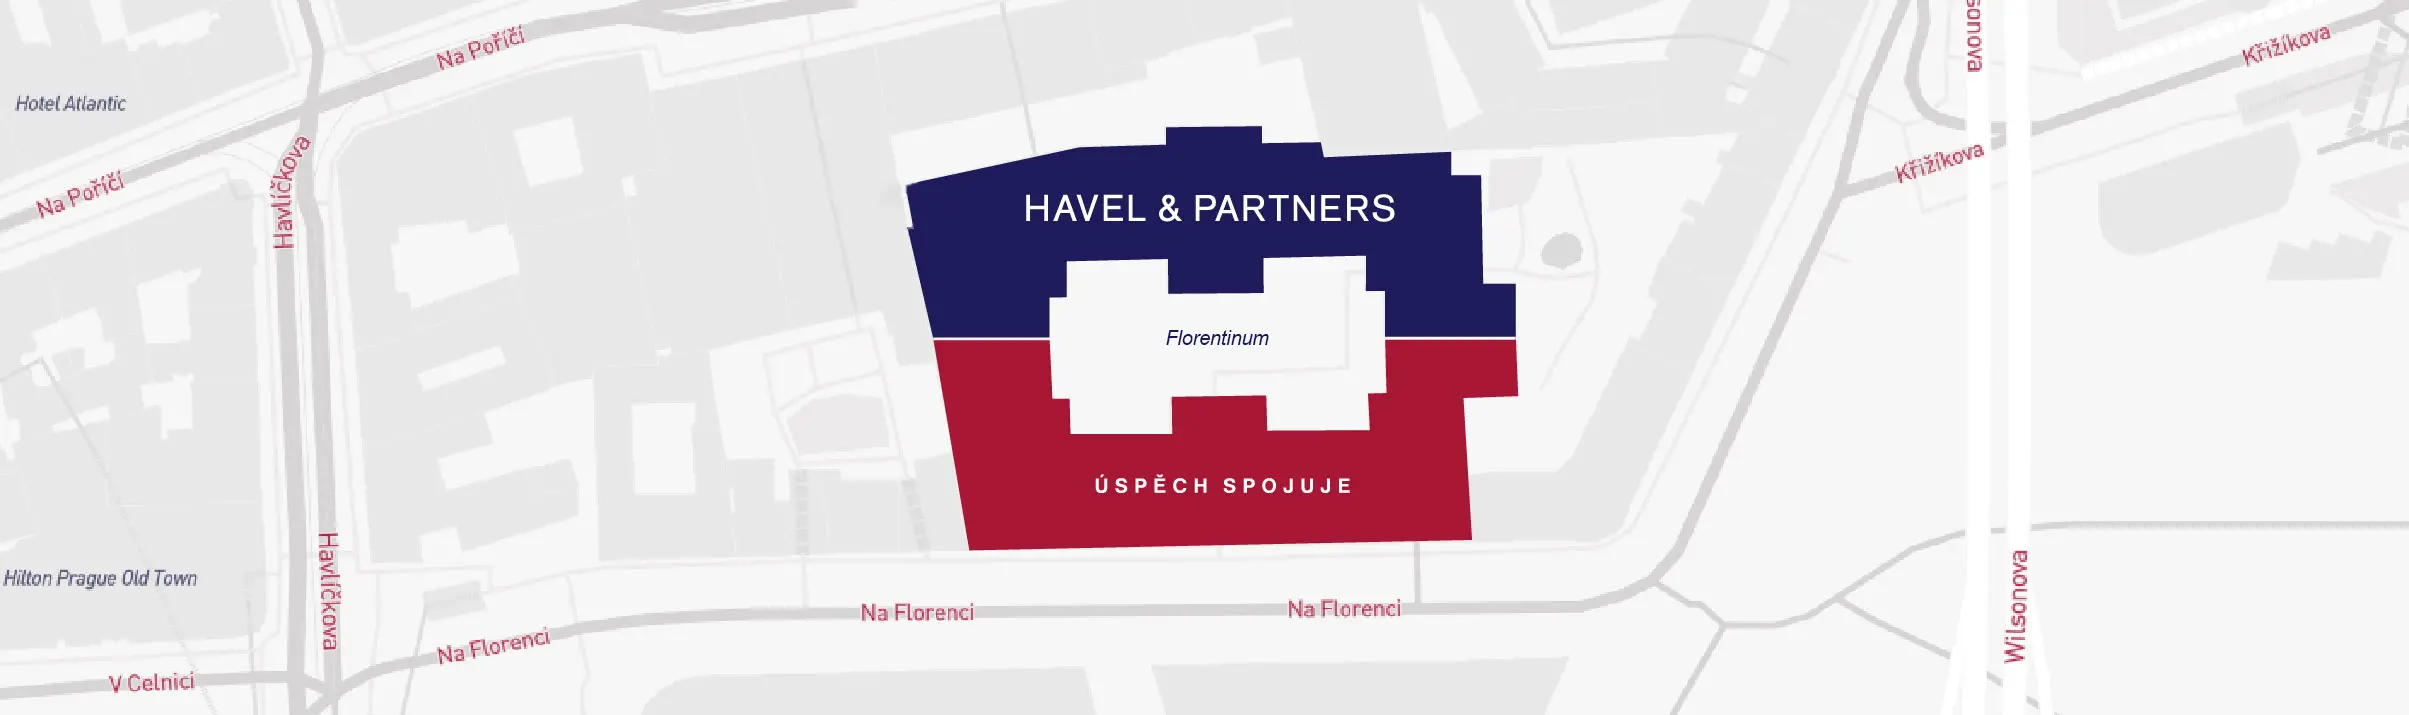 Náhled mapy s hlavním sídlem Havel & Partners Praha – Florentinum